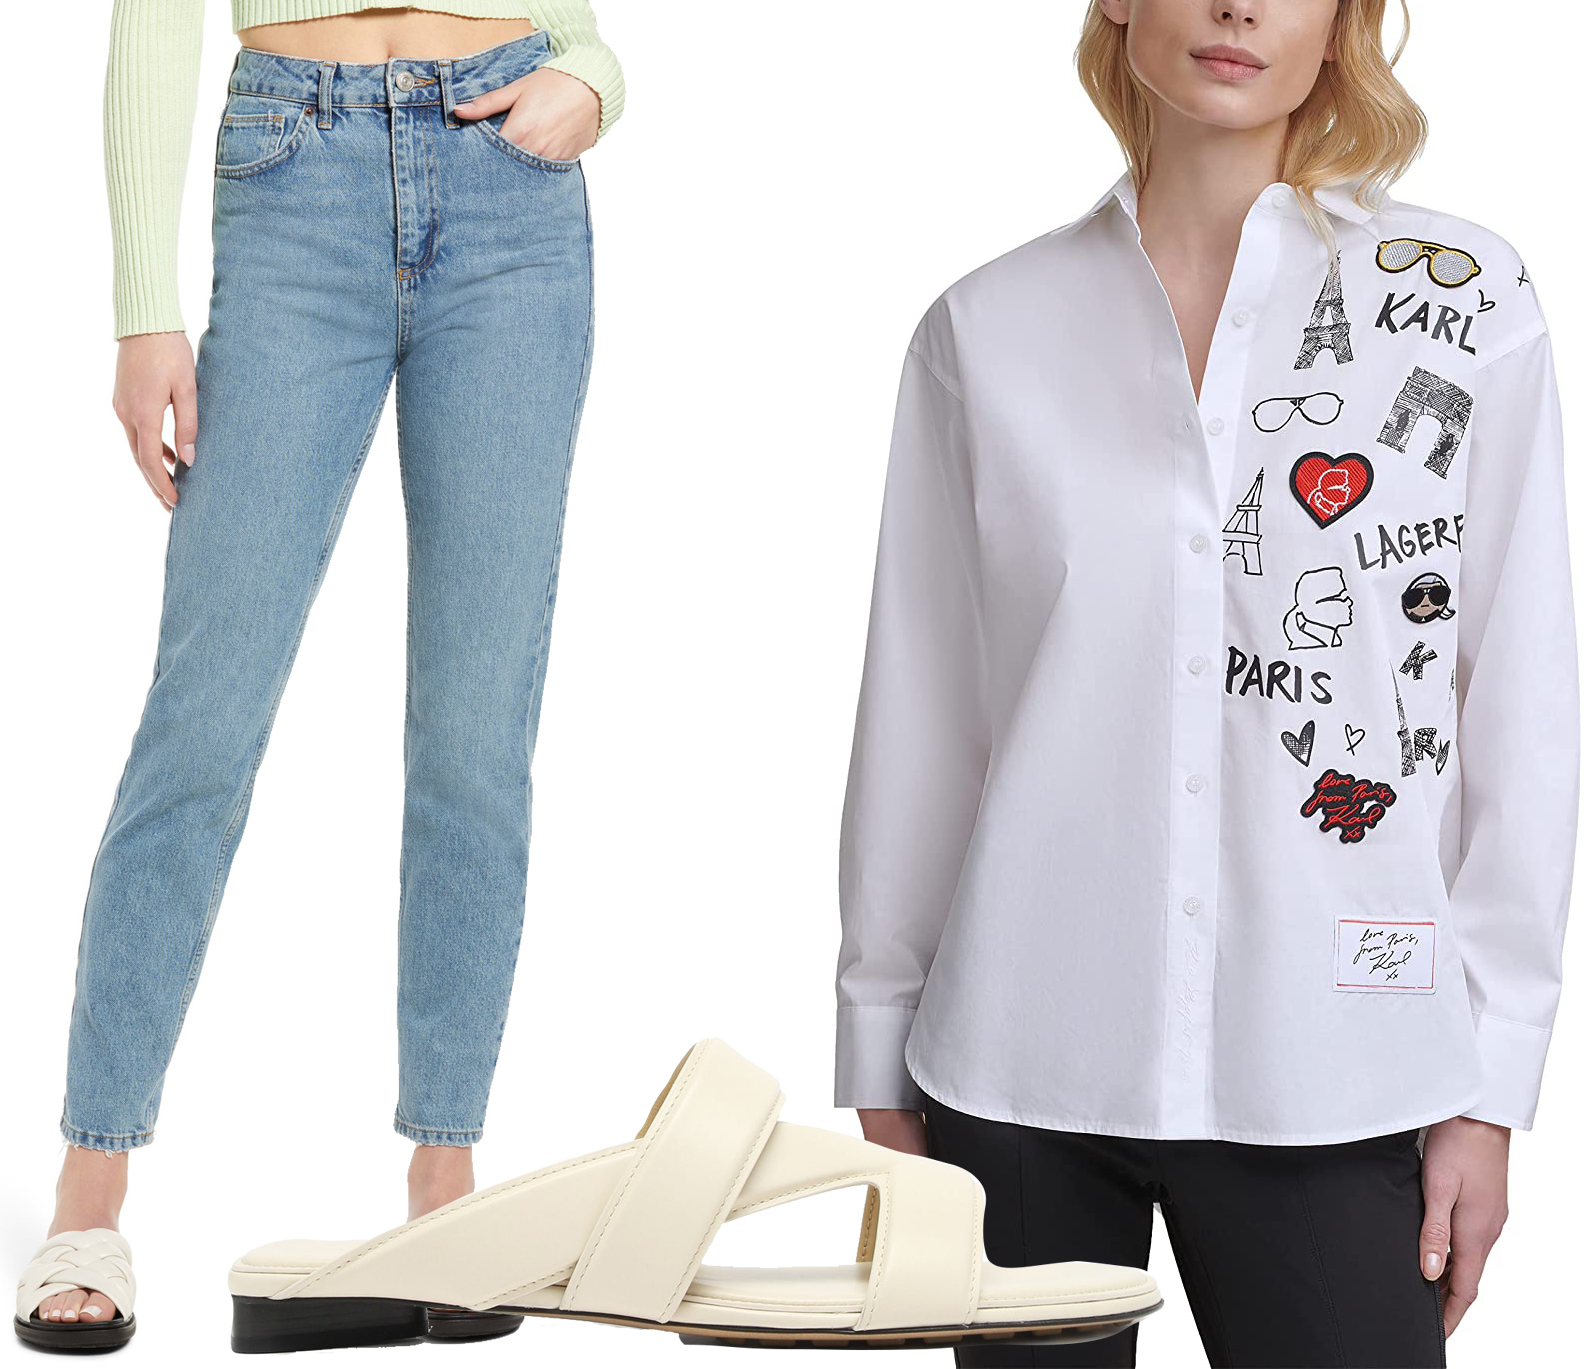 BDG Urban Outfitters High-Waist Mom Jeans, Karl Lagerfeld White Shirt Scenic Logo, Bottega Veneta Crossover-Strap Leather Slides